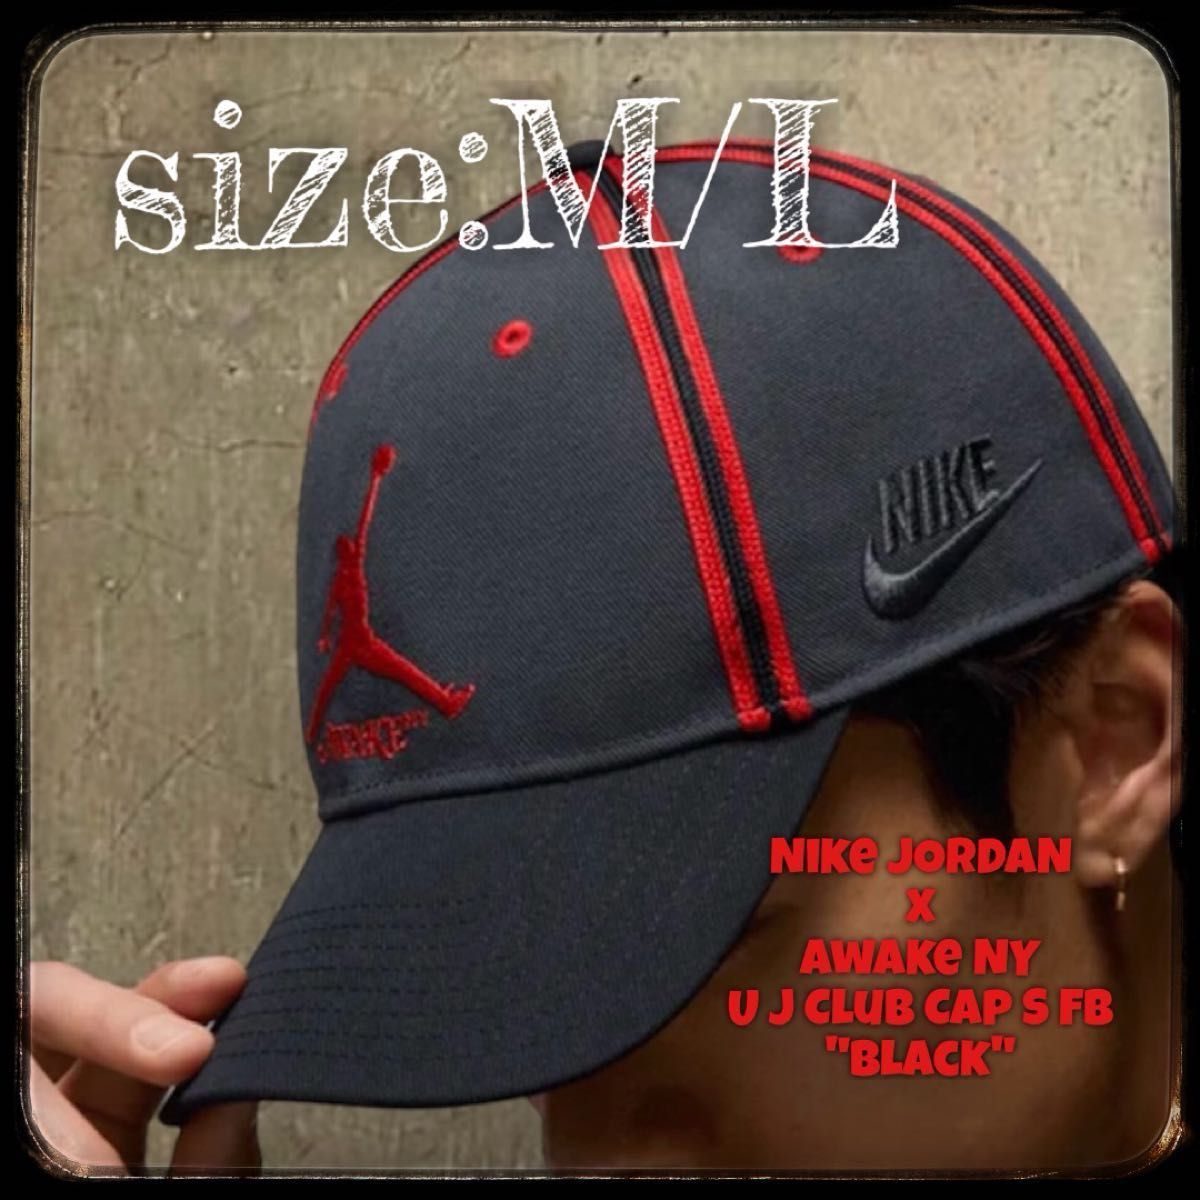 【M/L】Nike JORDAN x Awake NY U J Club Cap S Fb "Black"